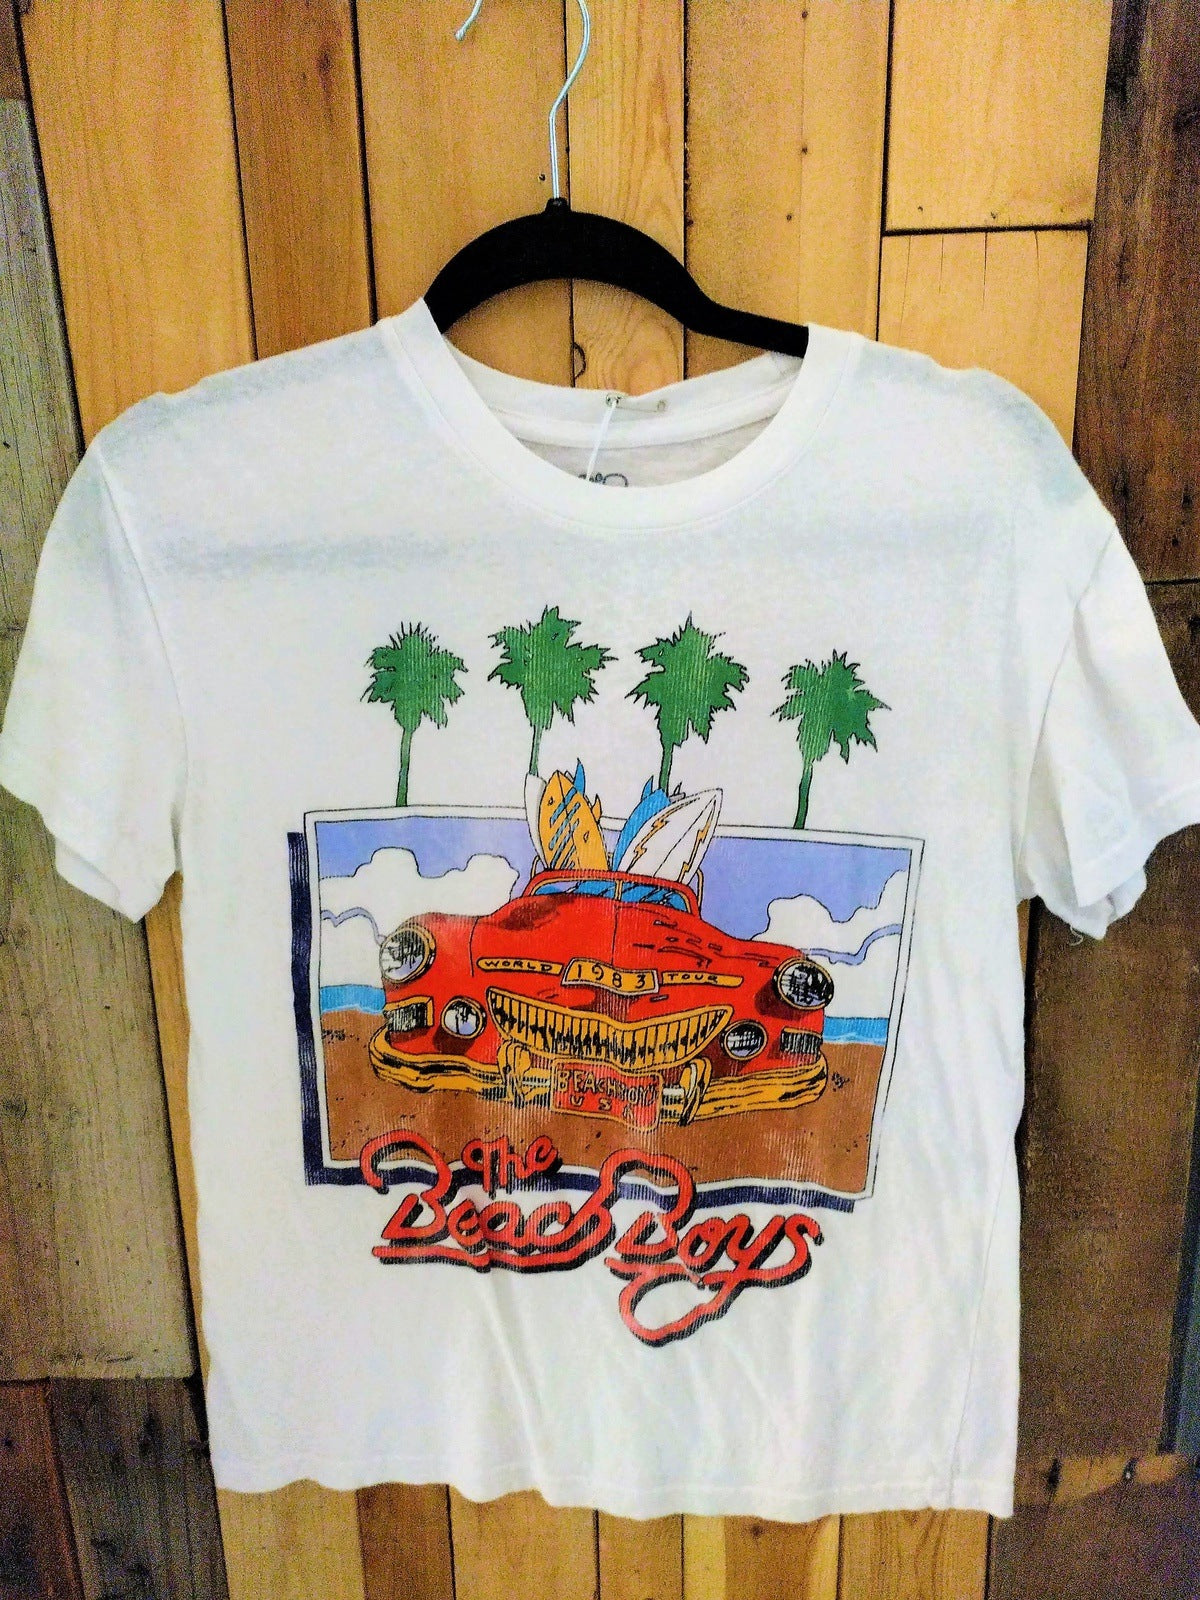 Beach Boys Official Merchandise T Shirt Size Small